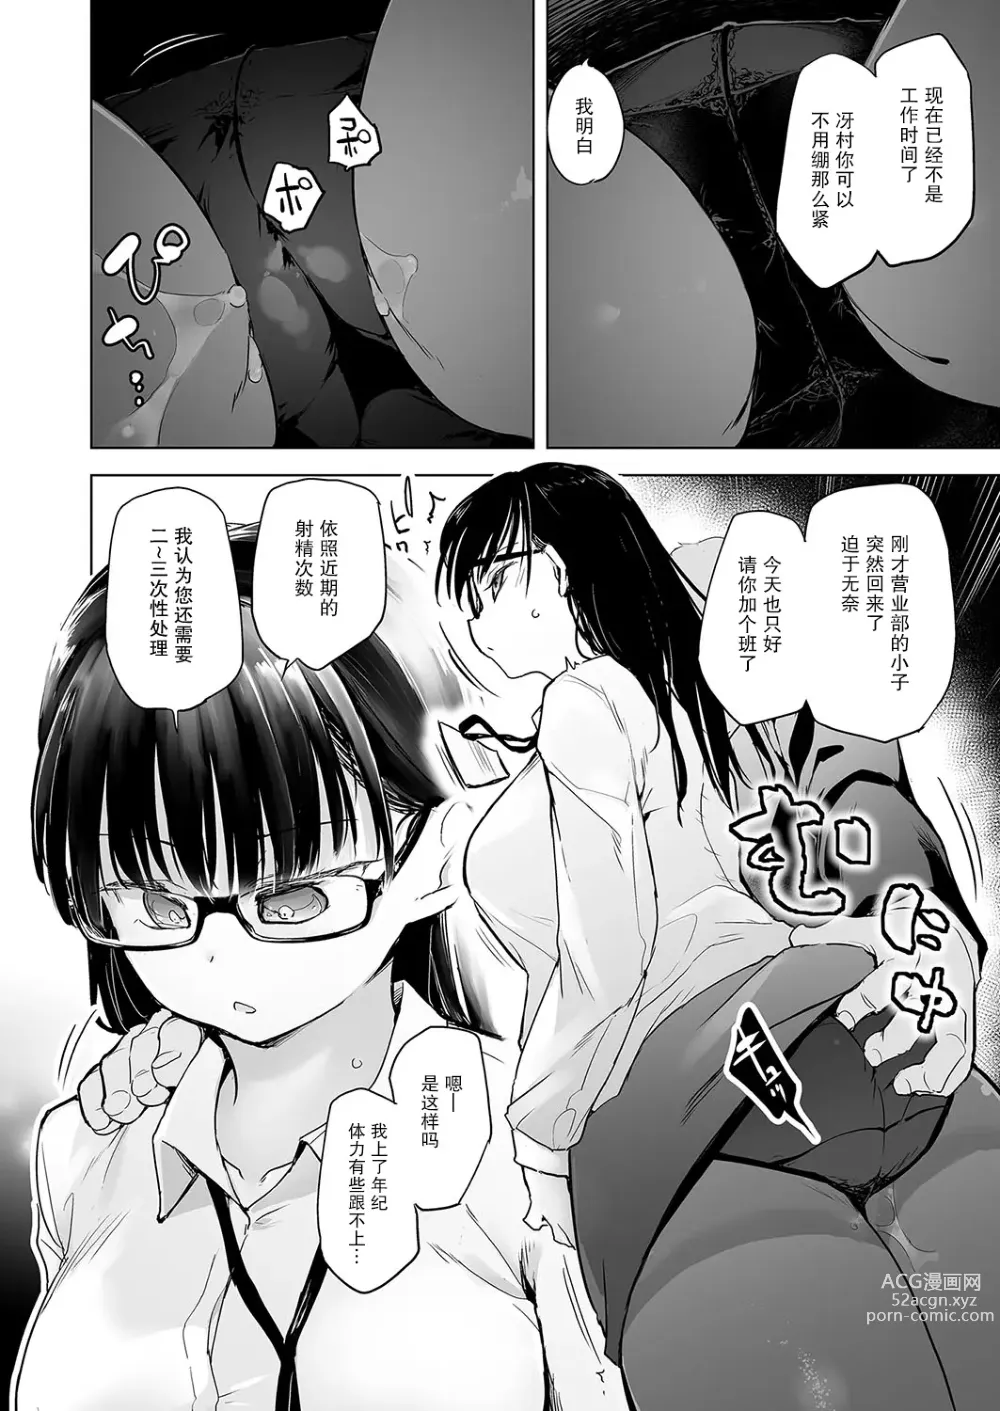 Page 4 of manga Pawahara no shoseijutsu